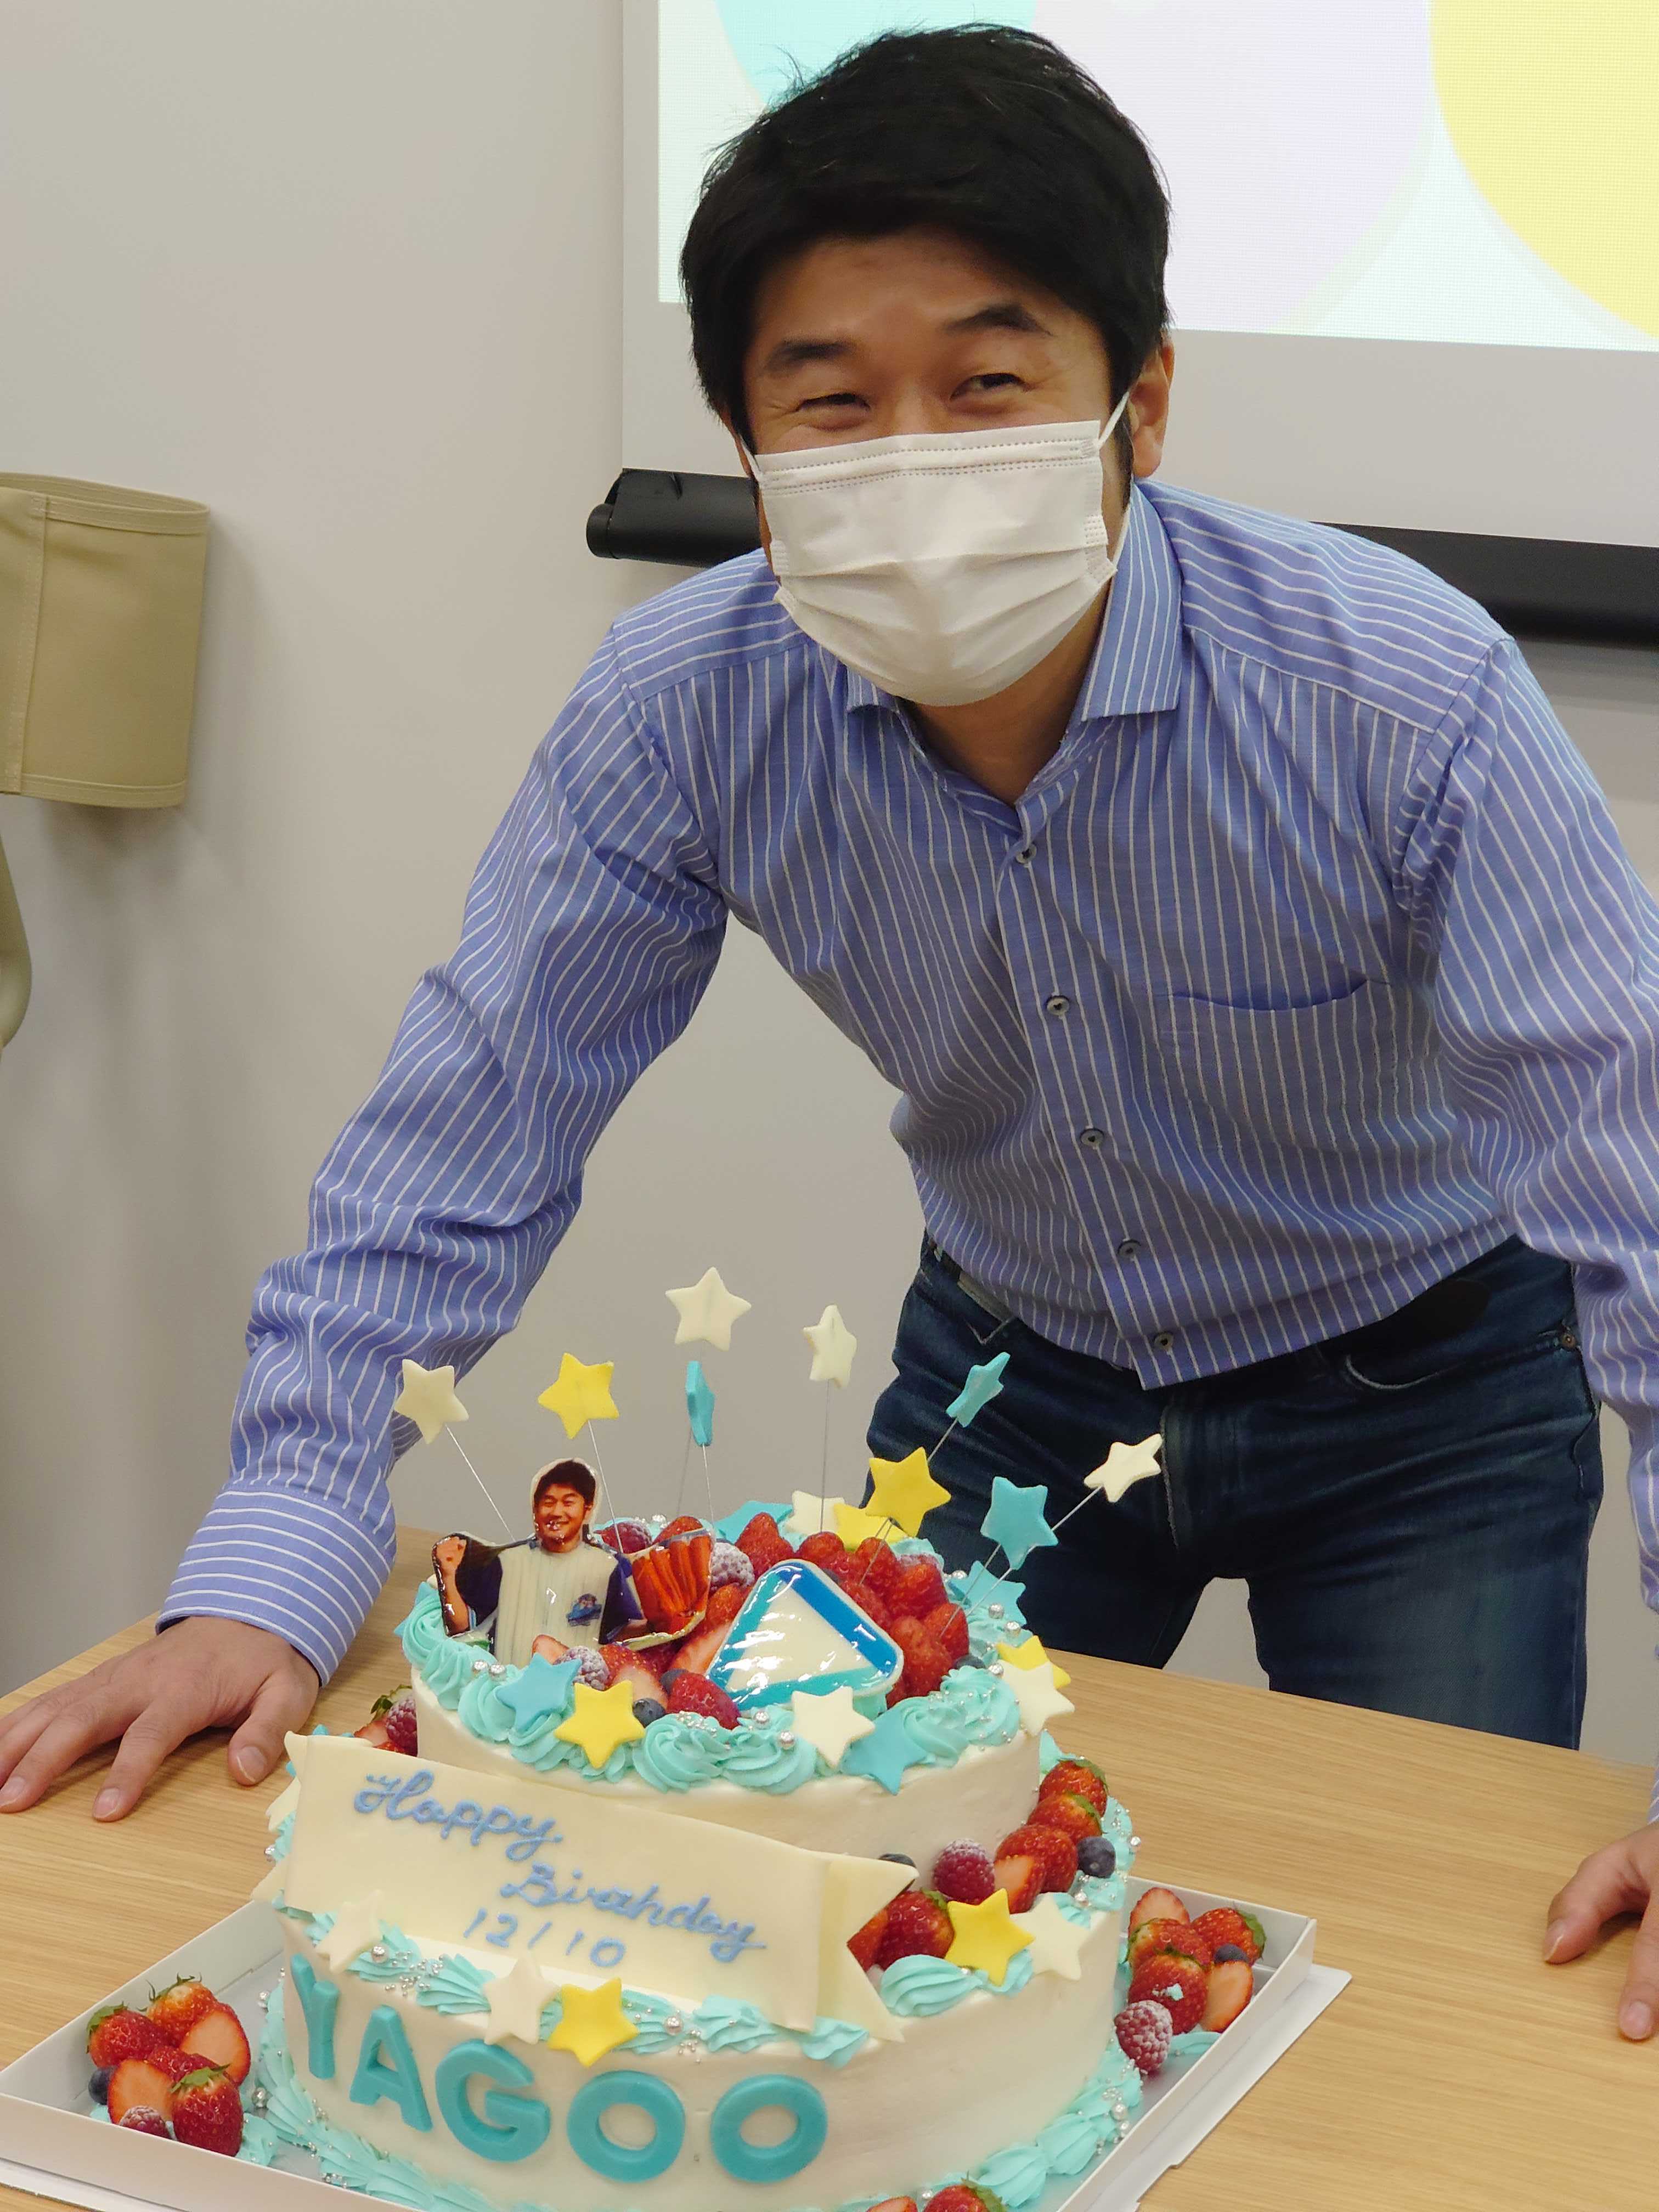 カバー株式会社 Happy Birthday 今日 12月10日は弊社代表 谷郷元昭 の誕生日 本社では サプライズでケーキを用意しました Yagoo ホロライブ T Co Dd6nqnlzkt Twitter